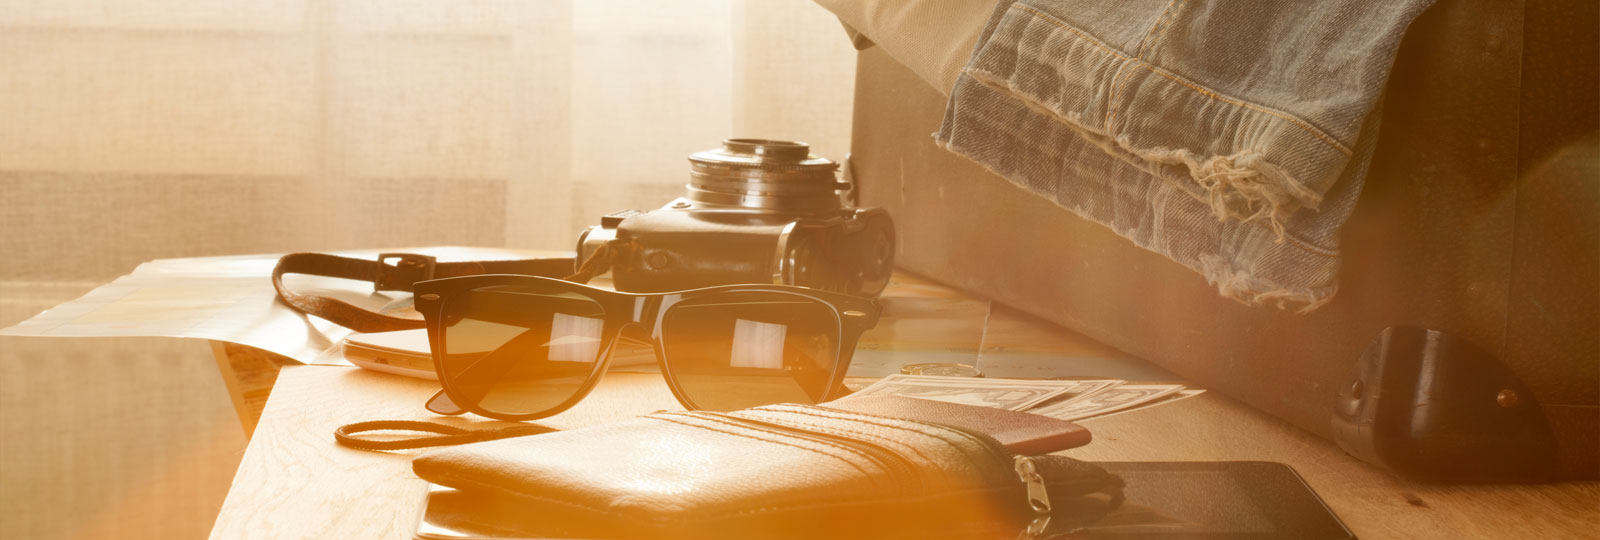 Koffer, Sonnenbrille und Notizbuch 